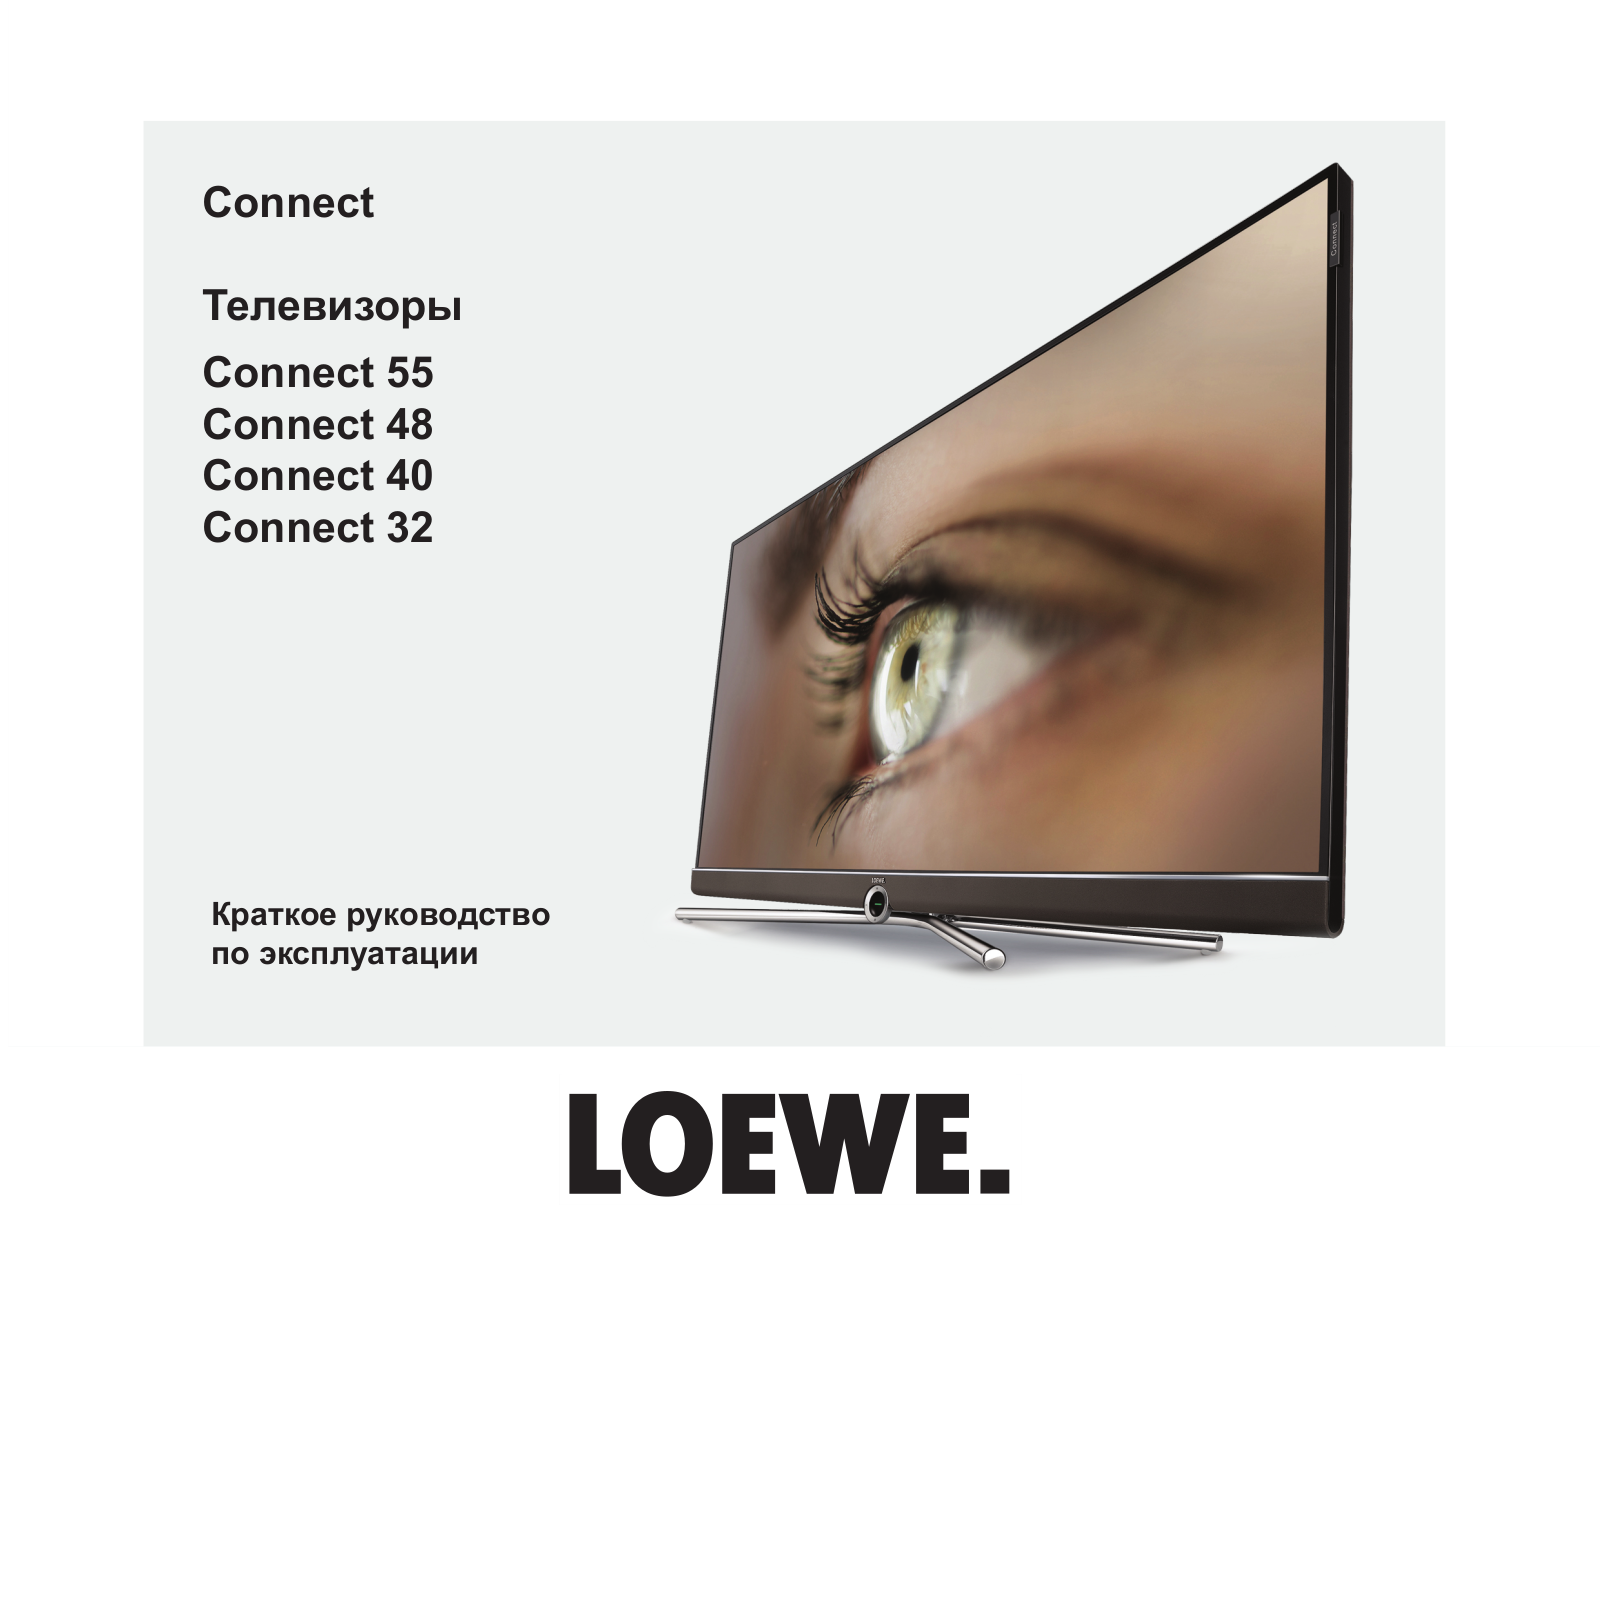 Loewe Connect 55, Connect 48, Connect 40, Connect 32 User Manual